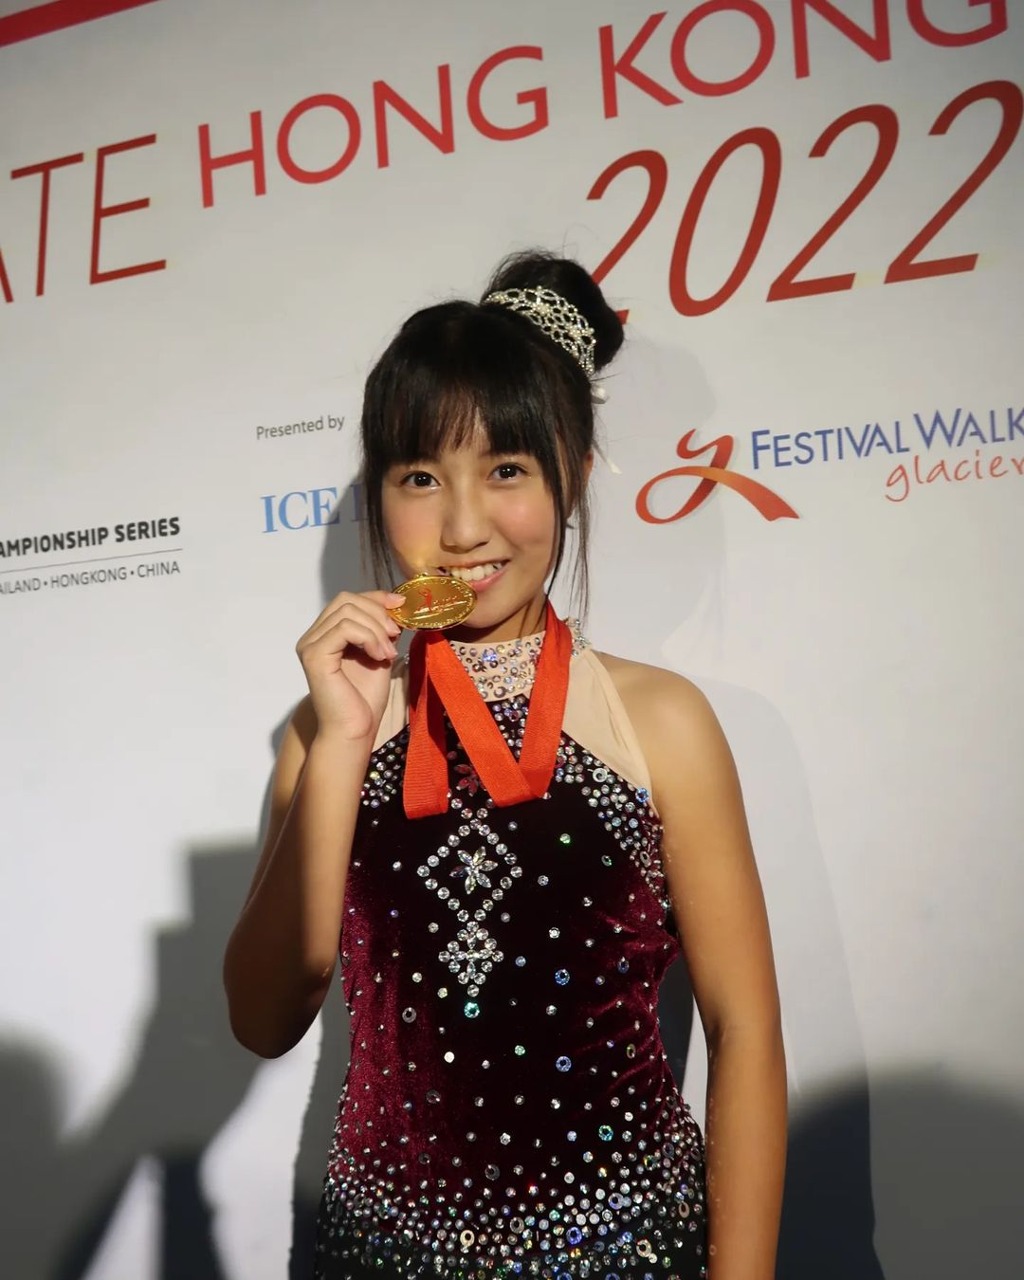 2022年11月夺得“ISI香港滑冰赛2022”第二名。